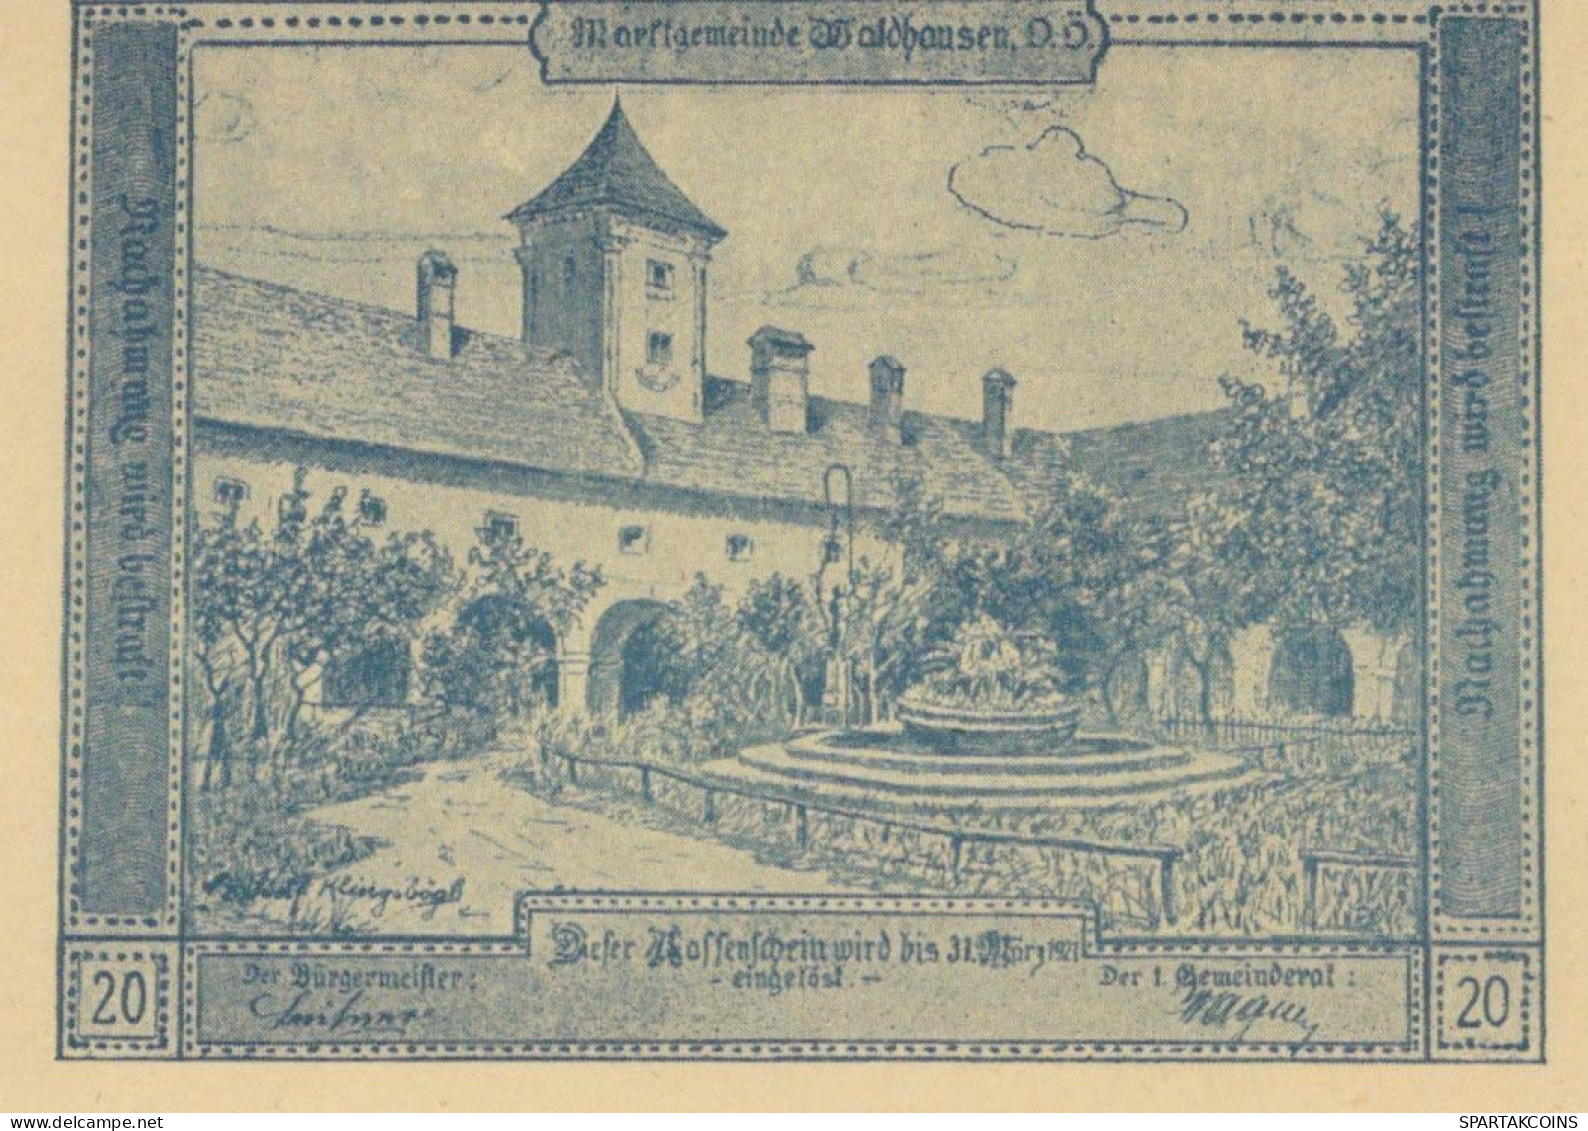 20 HELLER 1920 Stadt WALDHAUSEN Oberösterreich Österreich Notgeld Papiergeld Banknote #PG739 - [11] Emissions Locales